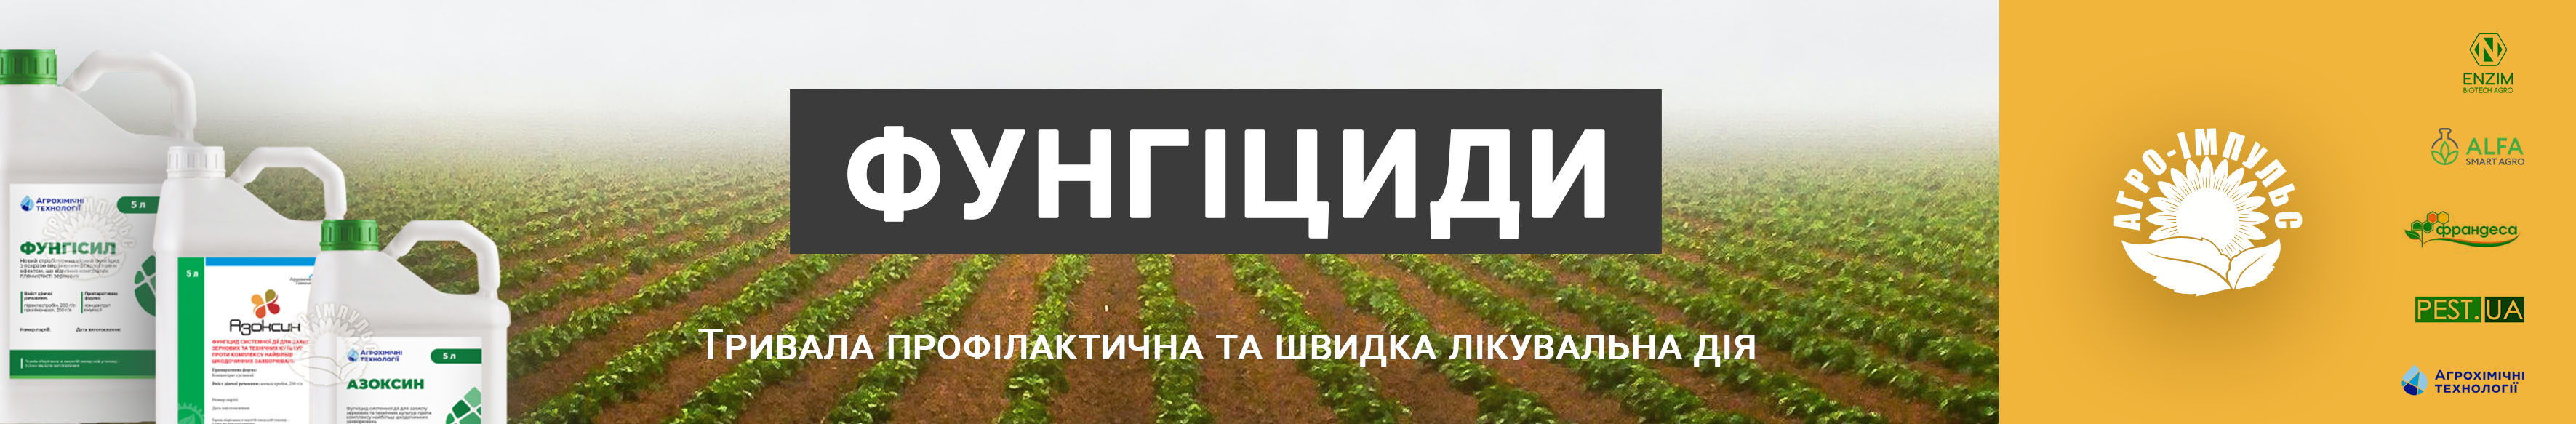 Купити Фунгіциди в Україні - банер